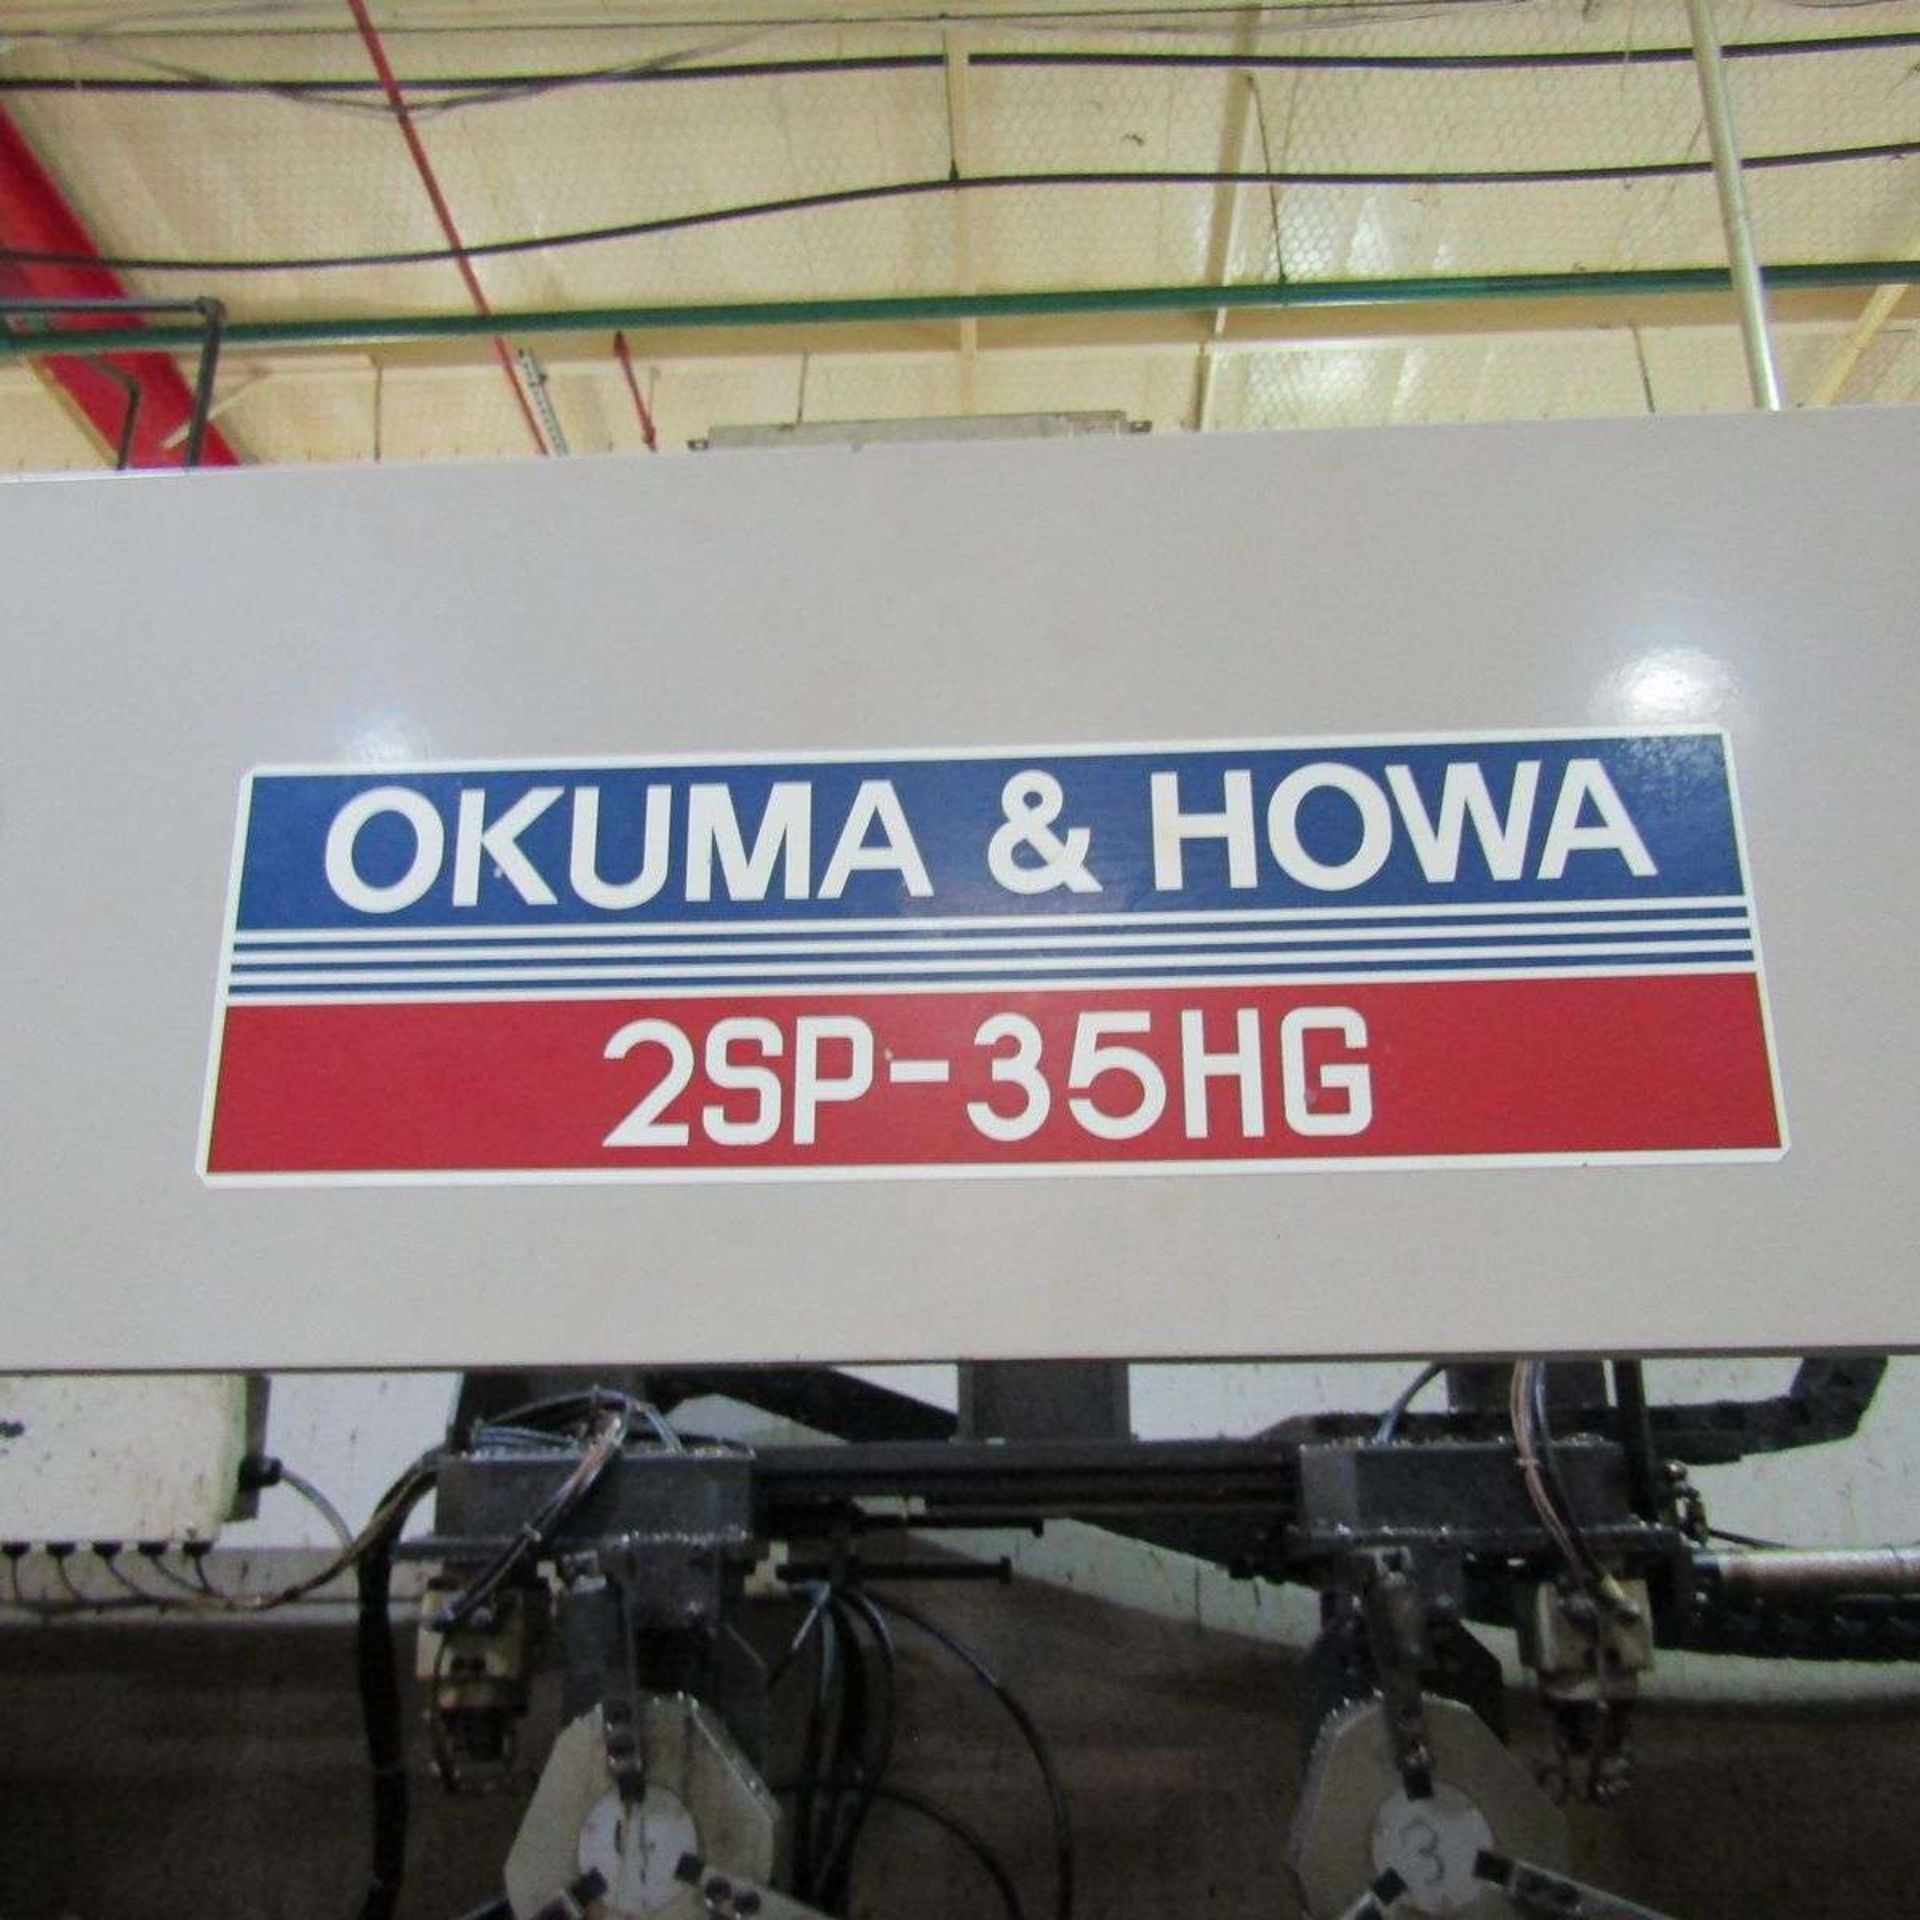 Okuma & Howa 2SP-35HG CNC Turning Machine - Image 2 of 8